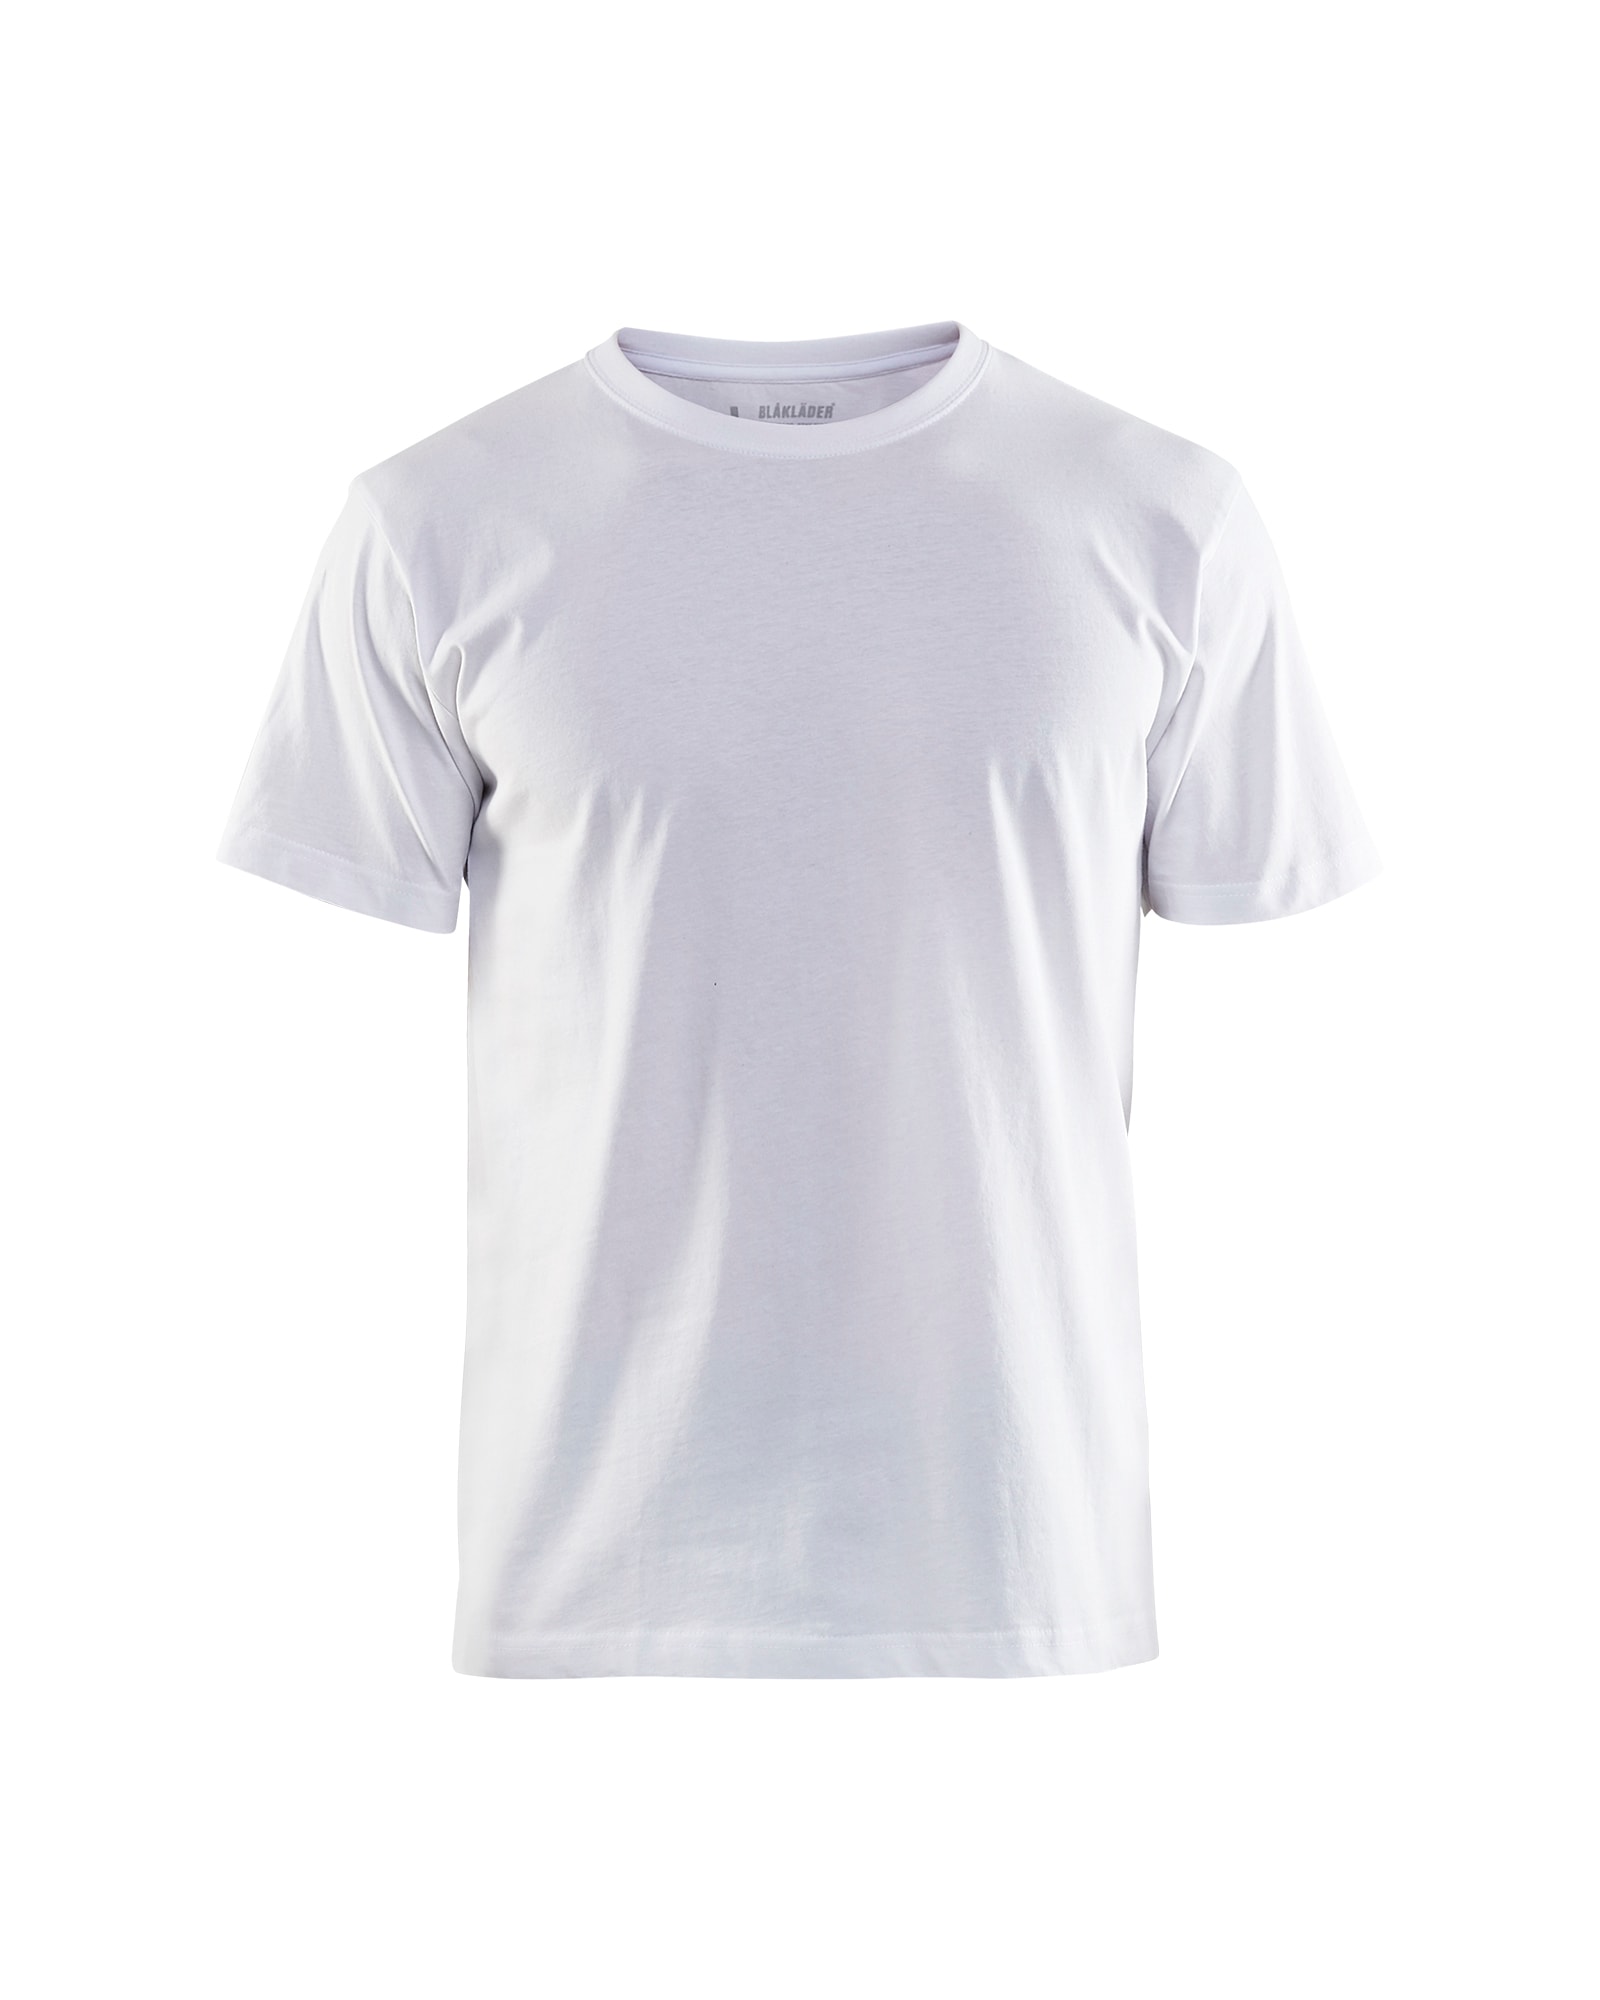 Blakläder Set Shorts T-Shirt 1502 1310 Handwerker (2 x Shorts, 5 x T-Shirt, 1 x Gratis Gürtel, 1 x Gratis Basballcap)